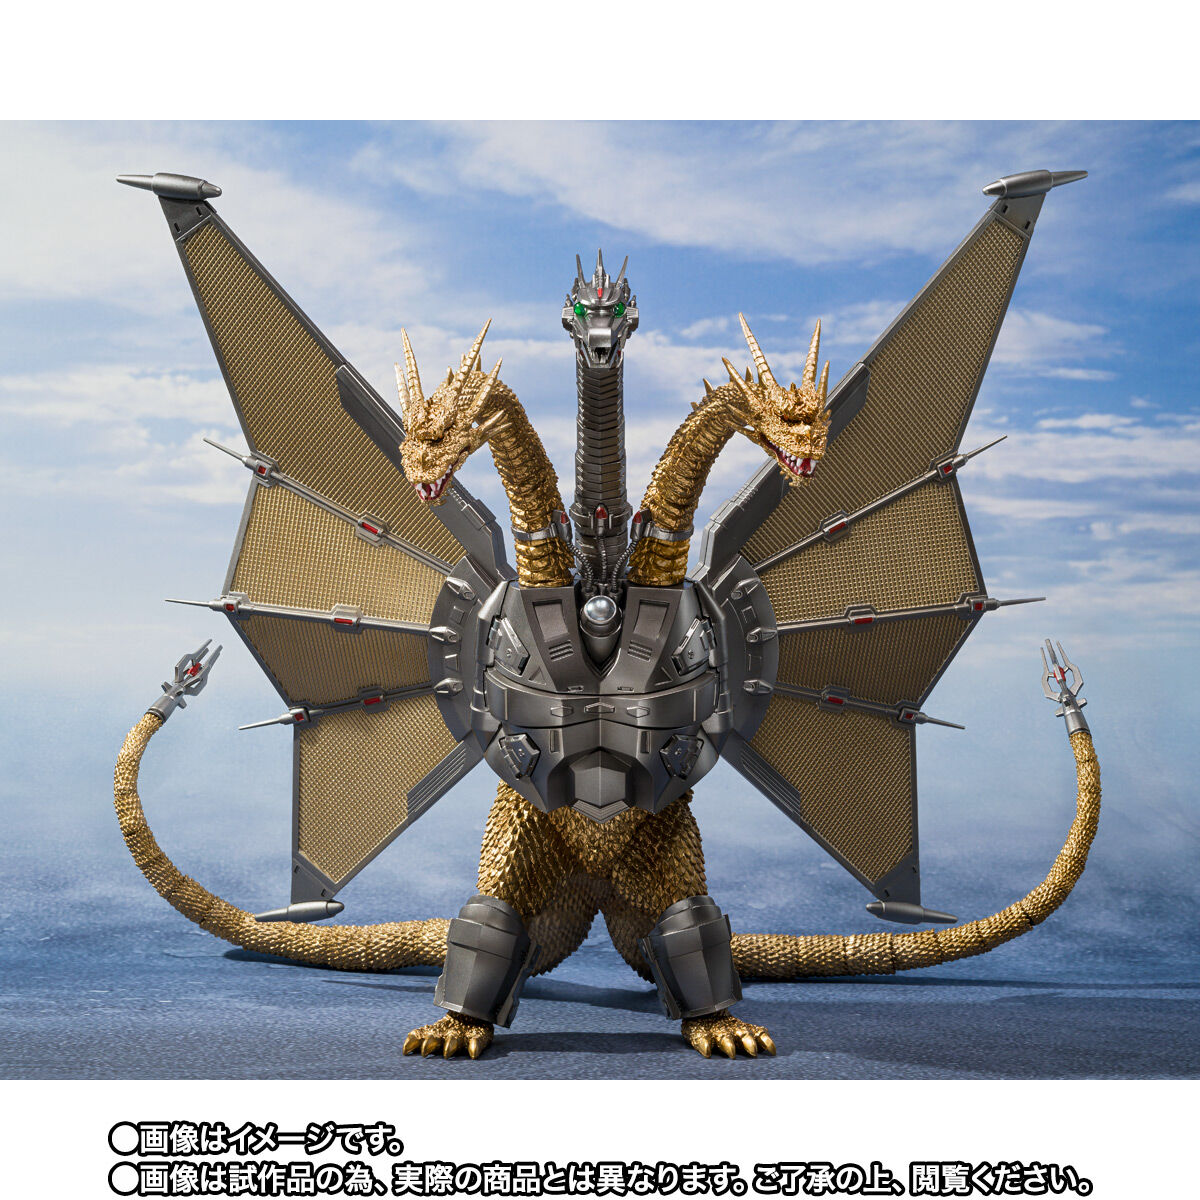 【限定販売】S.H.MonsterArts『メカキングギドラ 新宿決戦 Special Set』ゴジラvsキングギドラ 可動フィギュア-002